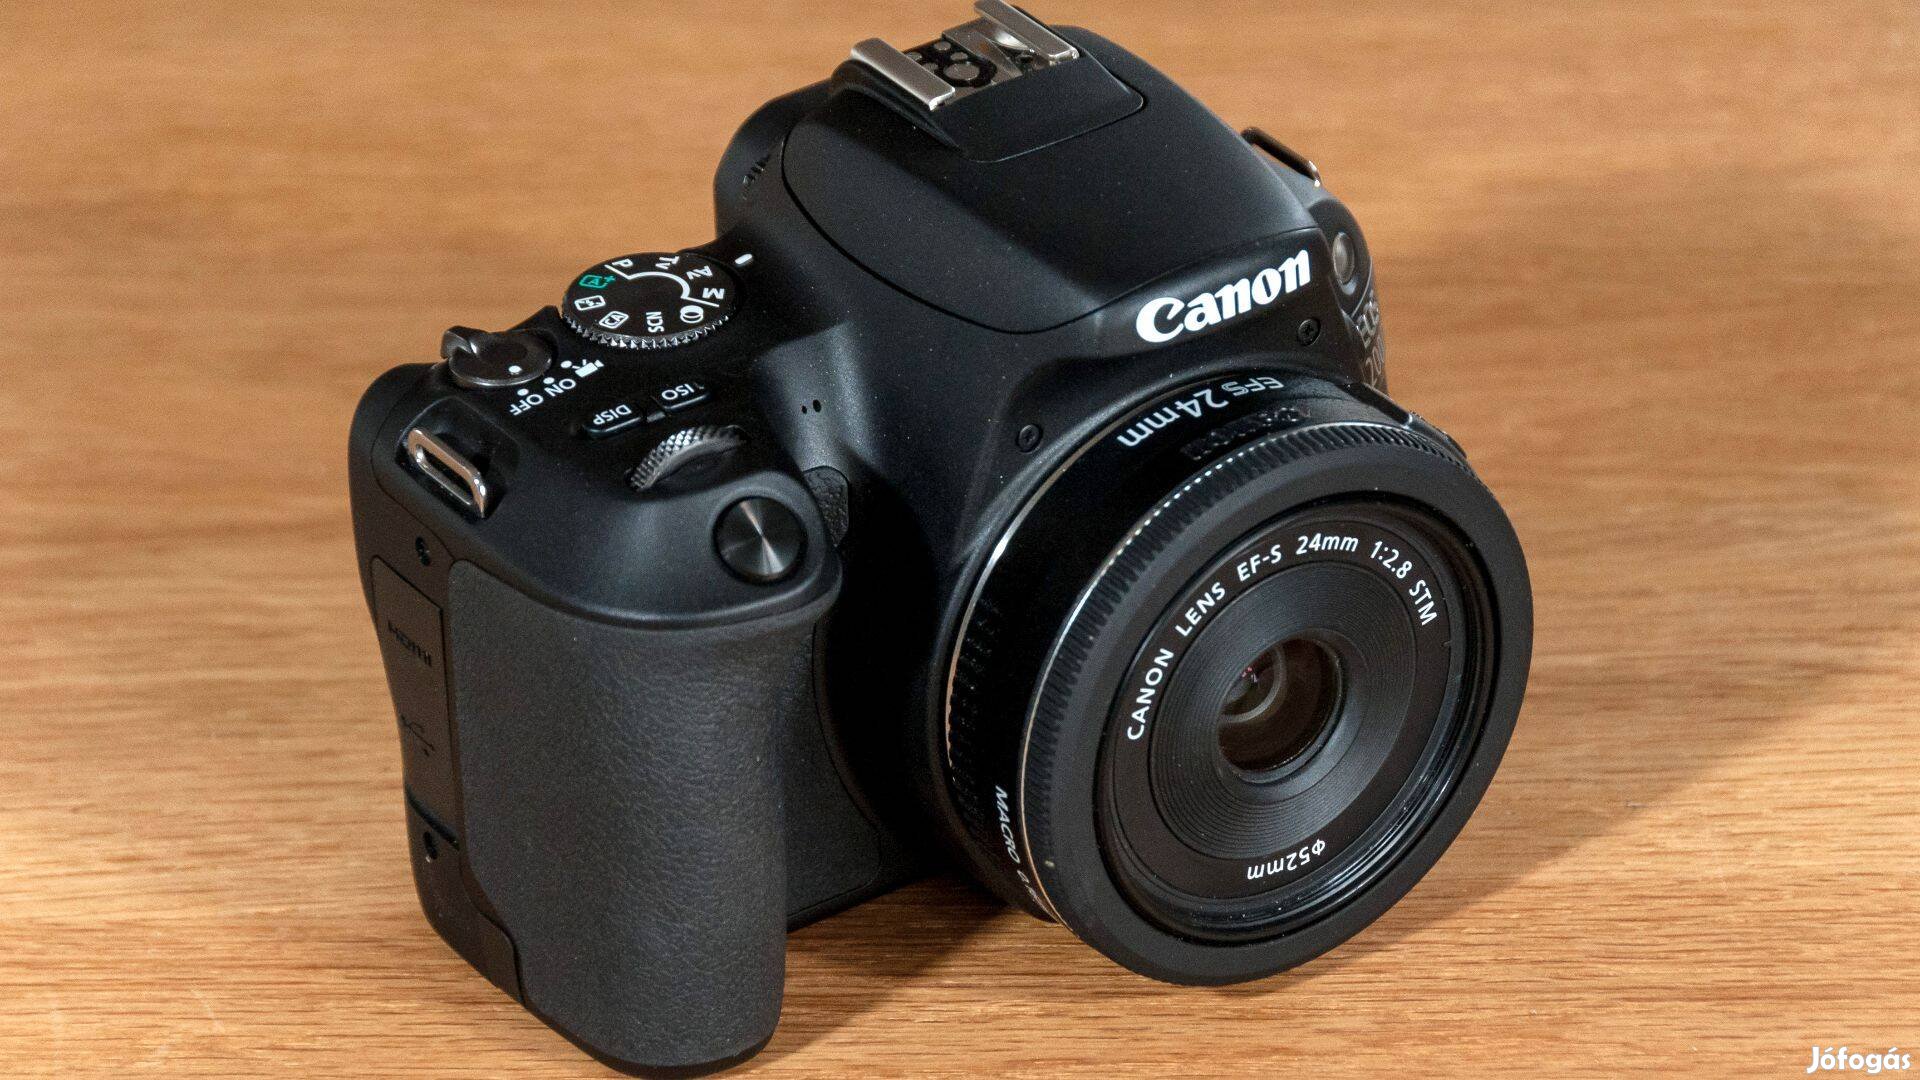 Eladó egy Canon EOS 200D fényképezőgép + EF-S 18-55mm objektív